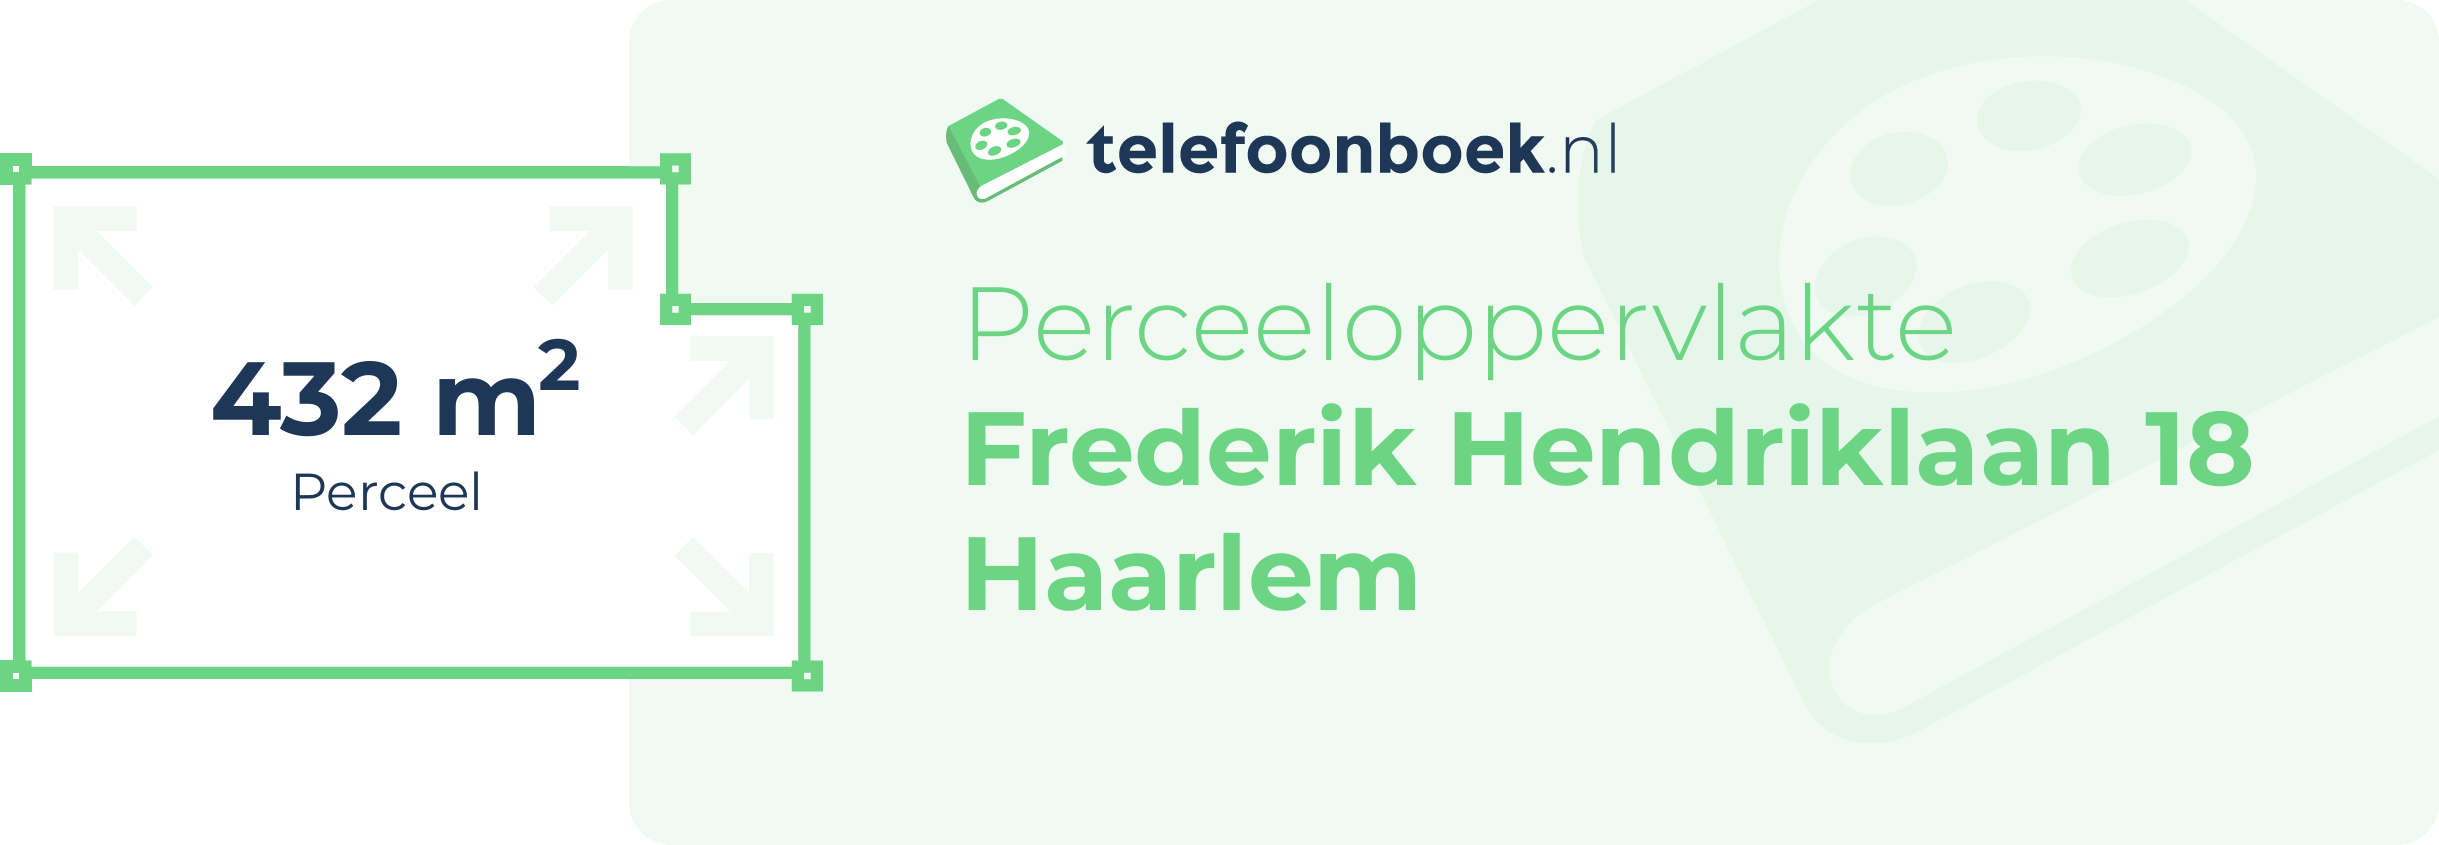 Perceeloppervlakte Frederik Hendriklaan 18 Haarlem